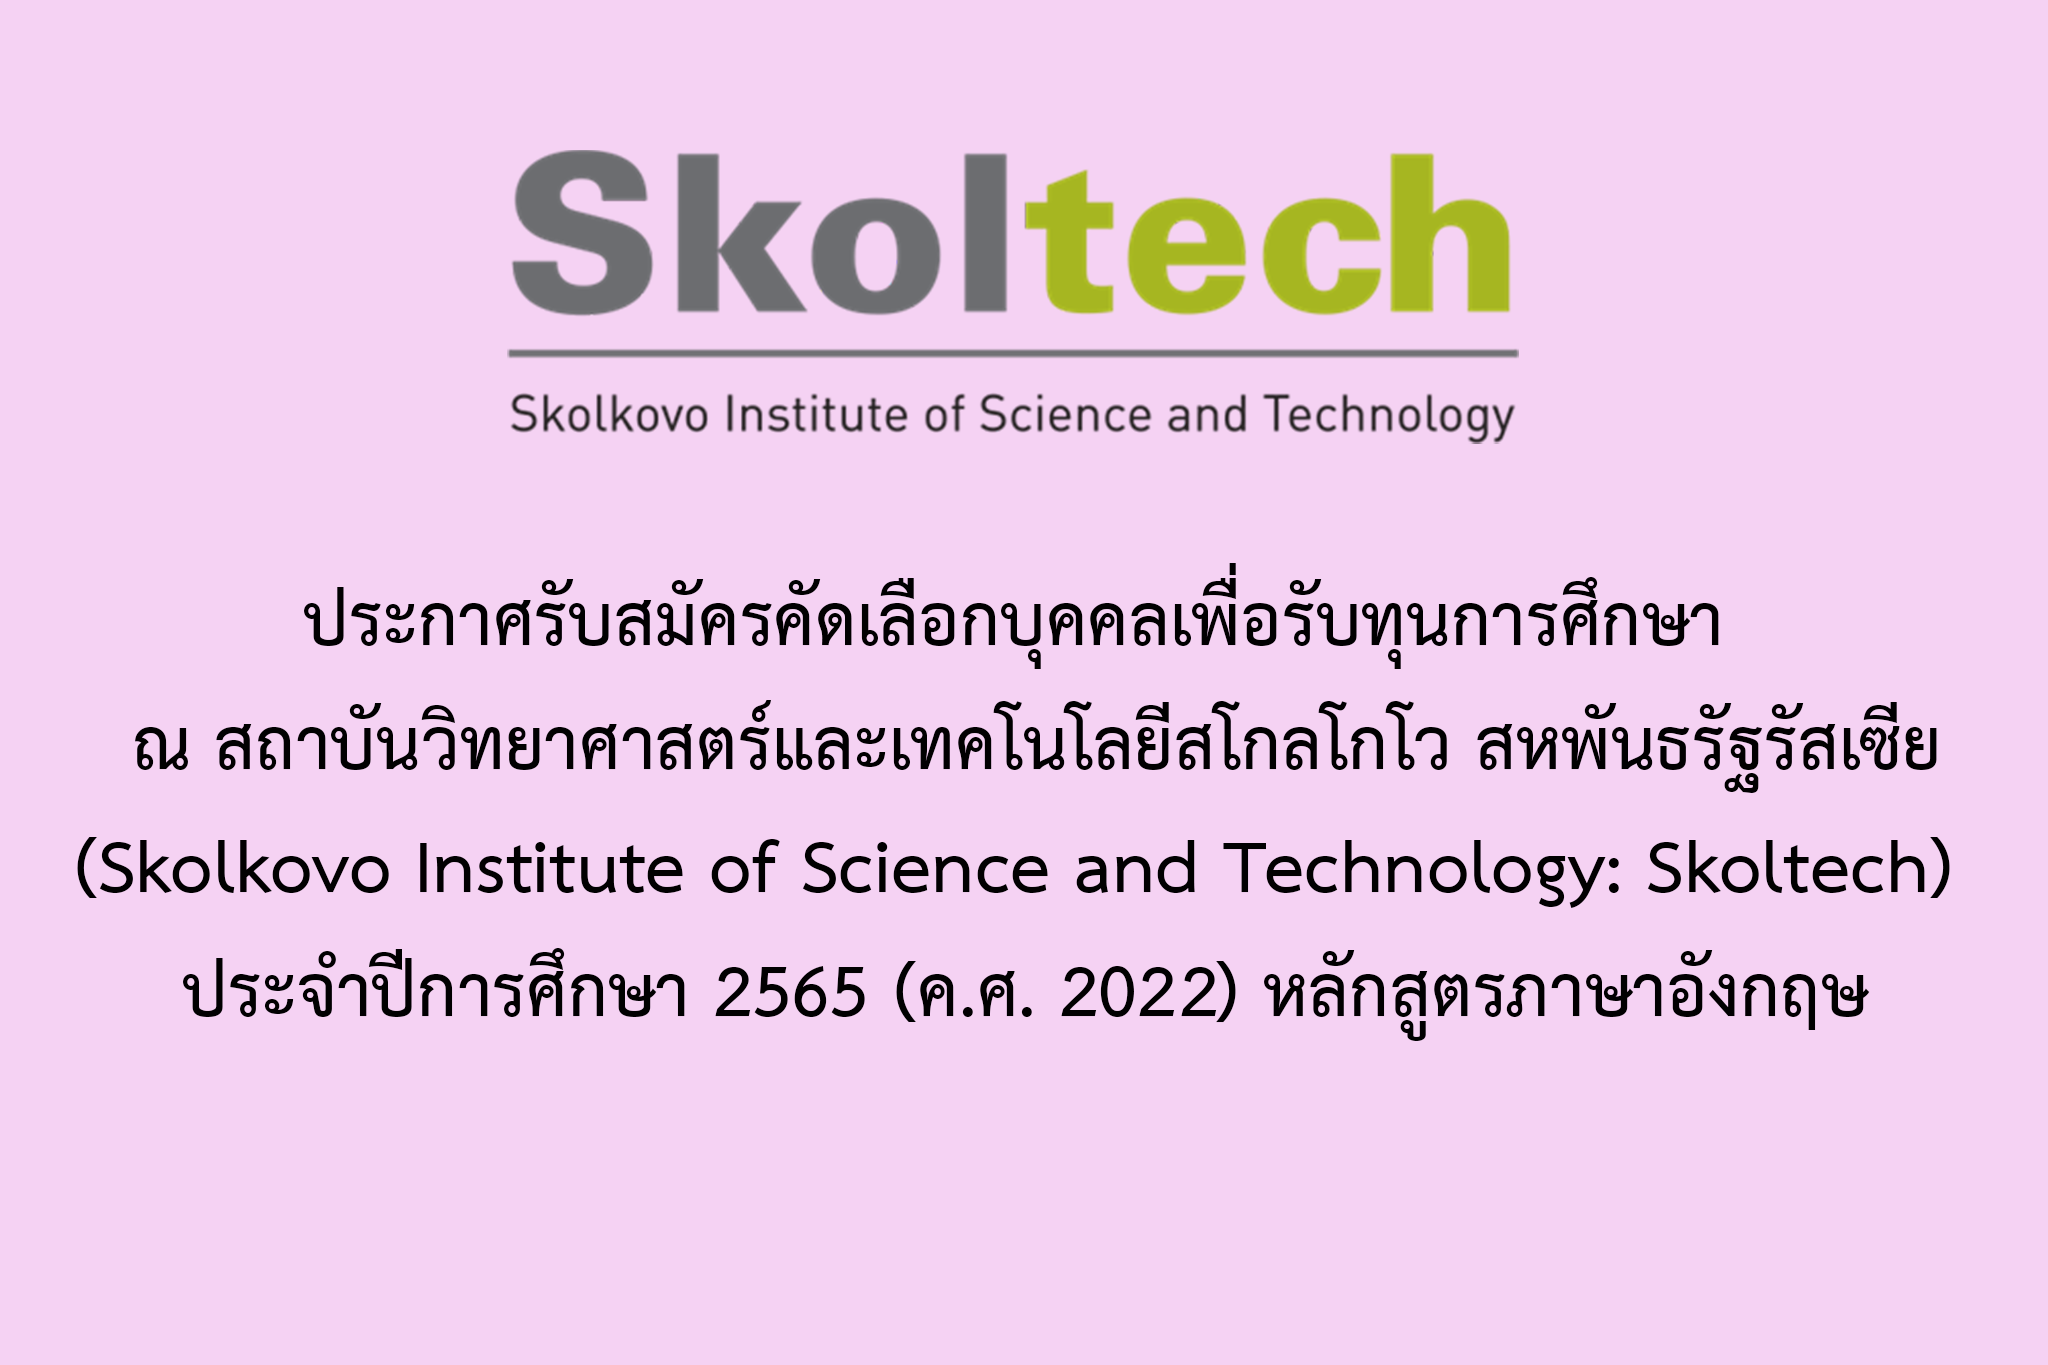    ประกาศรับสมัครคัดเลือกบุคคลเพื่อรับทุนการศึกษา ไปศึกษาวิชา ณ สถาบันวิทยาศาสตร์และเทคโนโลยีสโกลโกโว (Skolkovo Institute of Science and Technology: Skoltech) สหพันธรัฐรัสเซีย ประจำปีการศึกษา 2565 (ค.ศ. 2022) หลักสูตรภาษาอังกฤษ